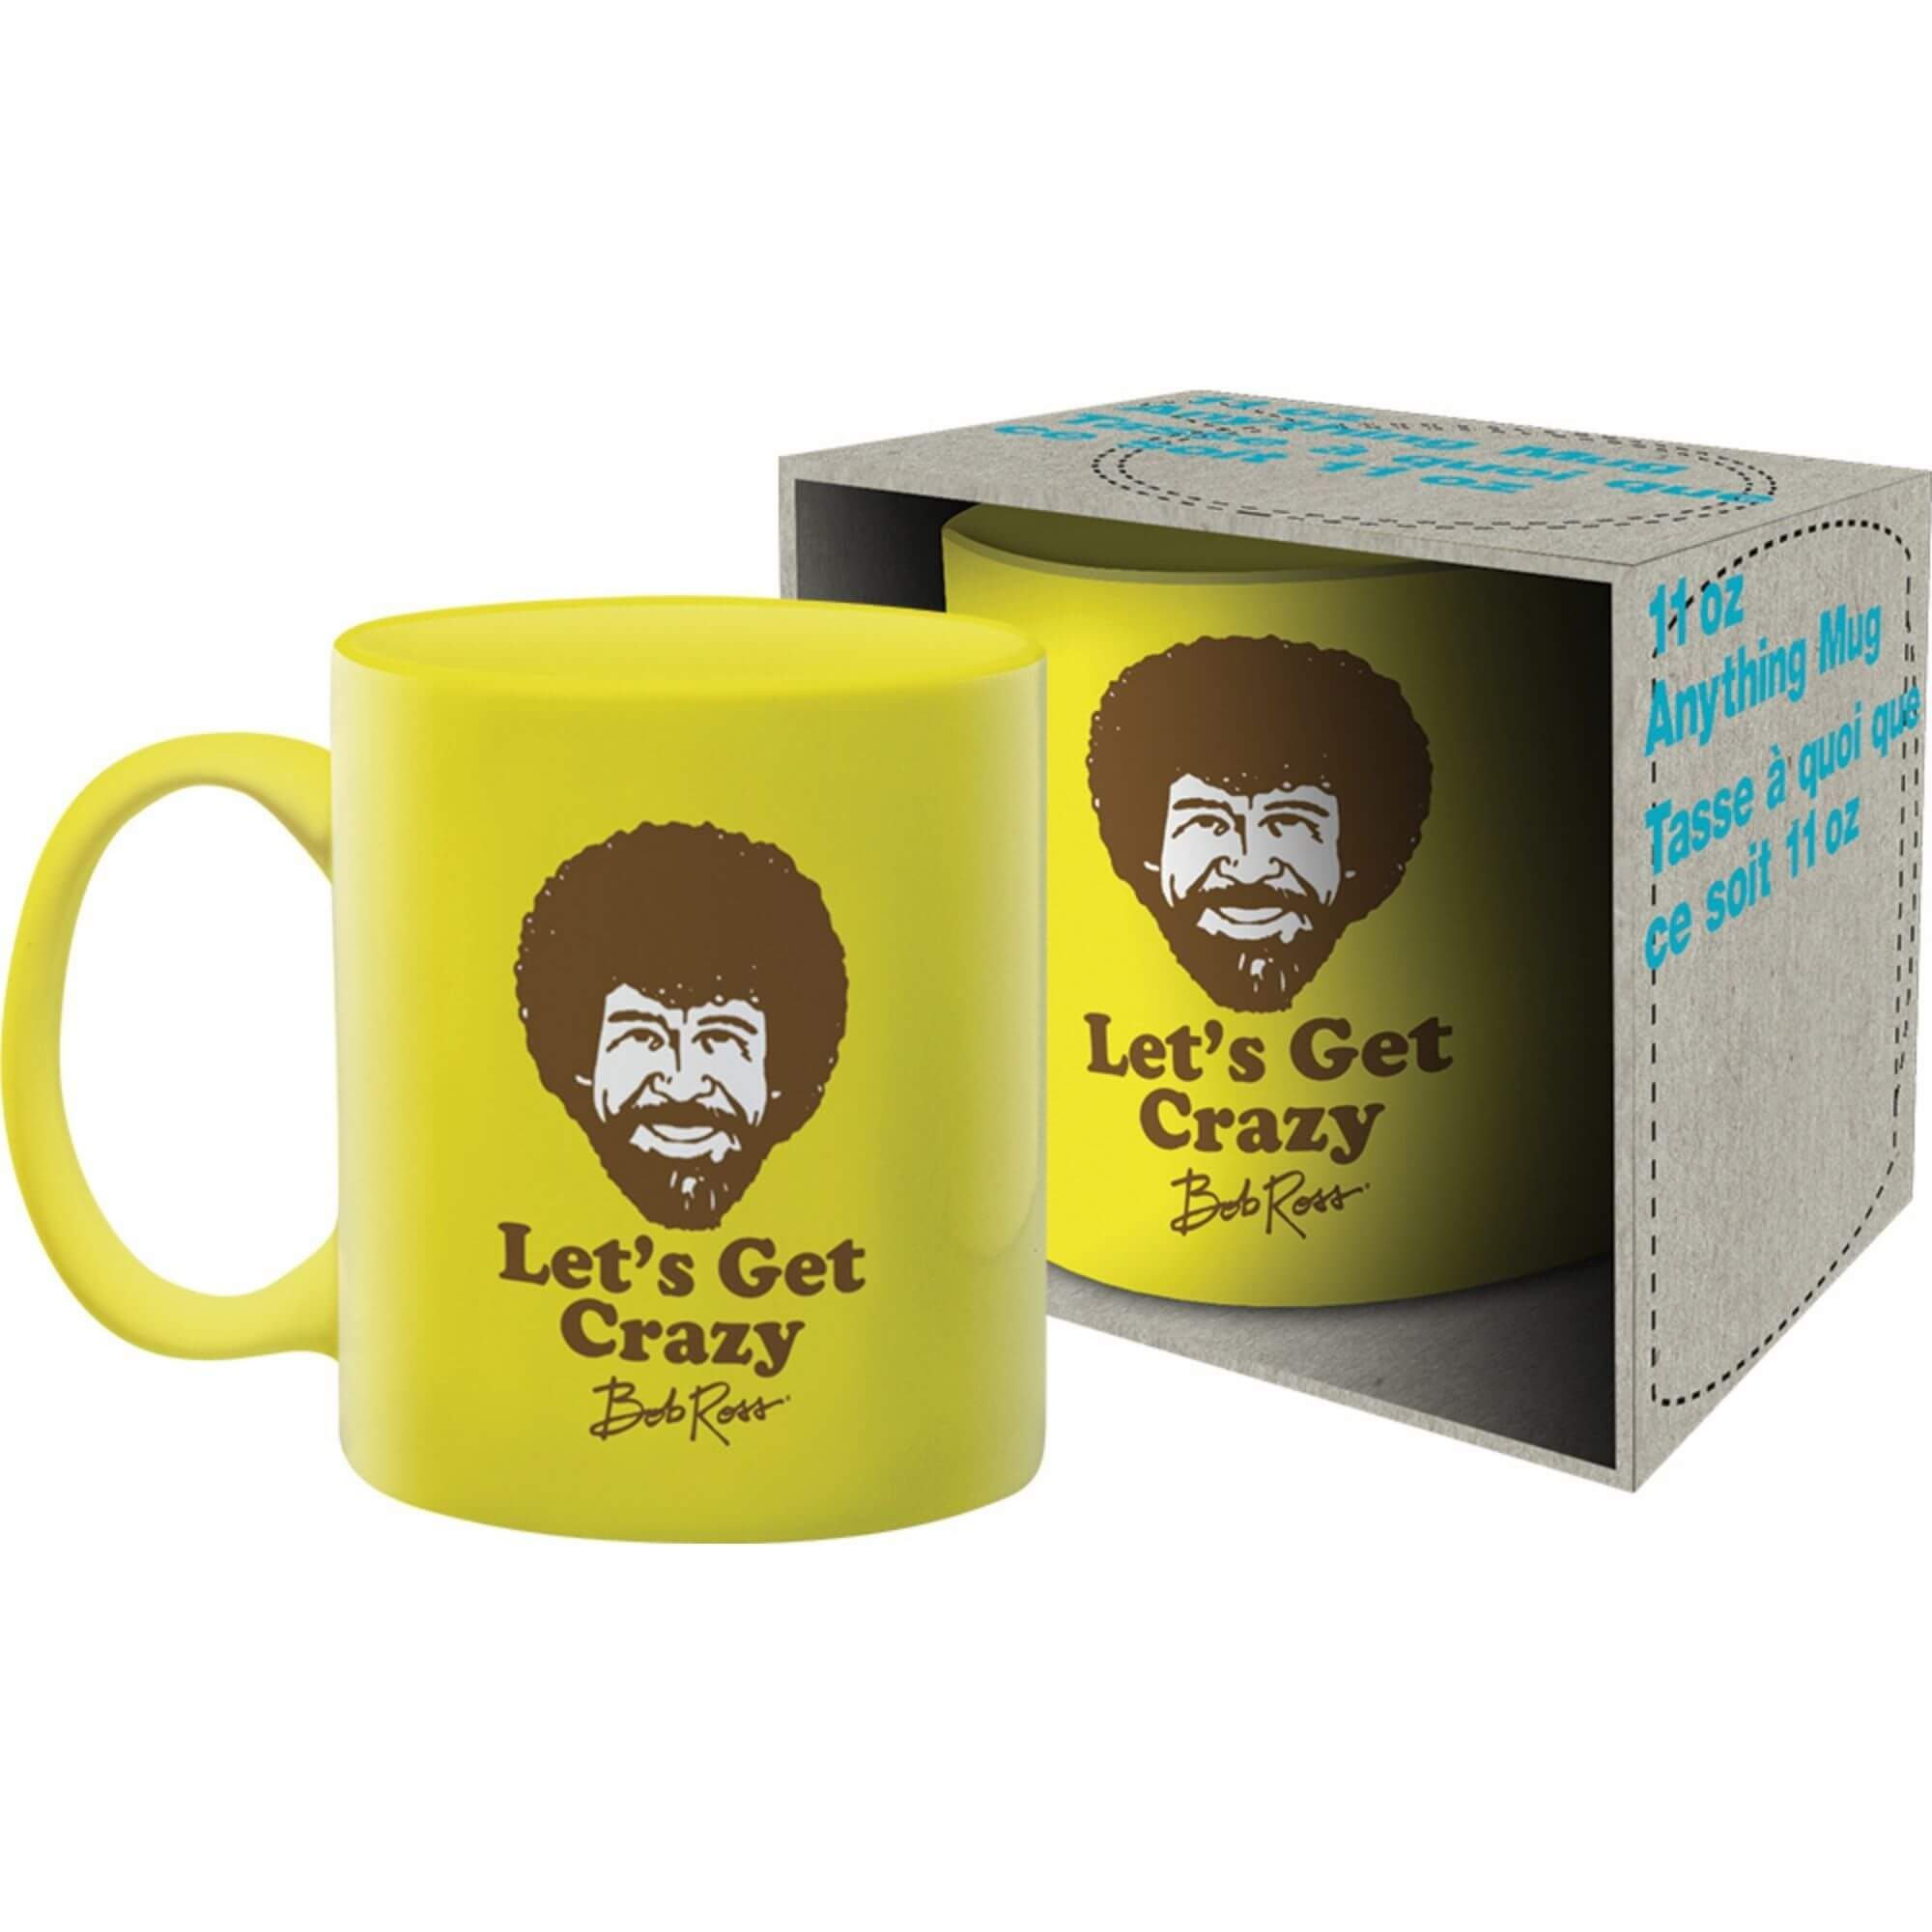 Bob Ross 11oz Mugs - Let's Get Crazy Design, yellow hue